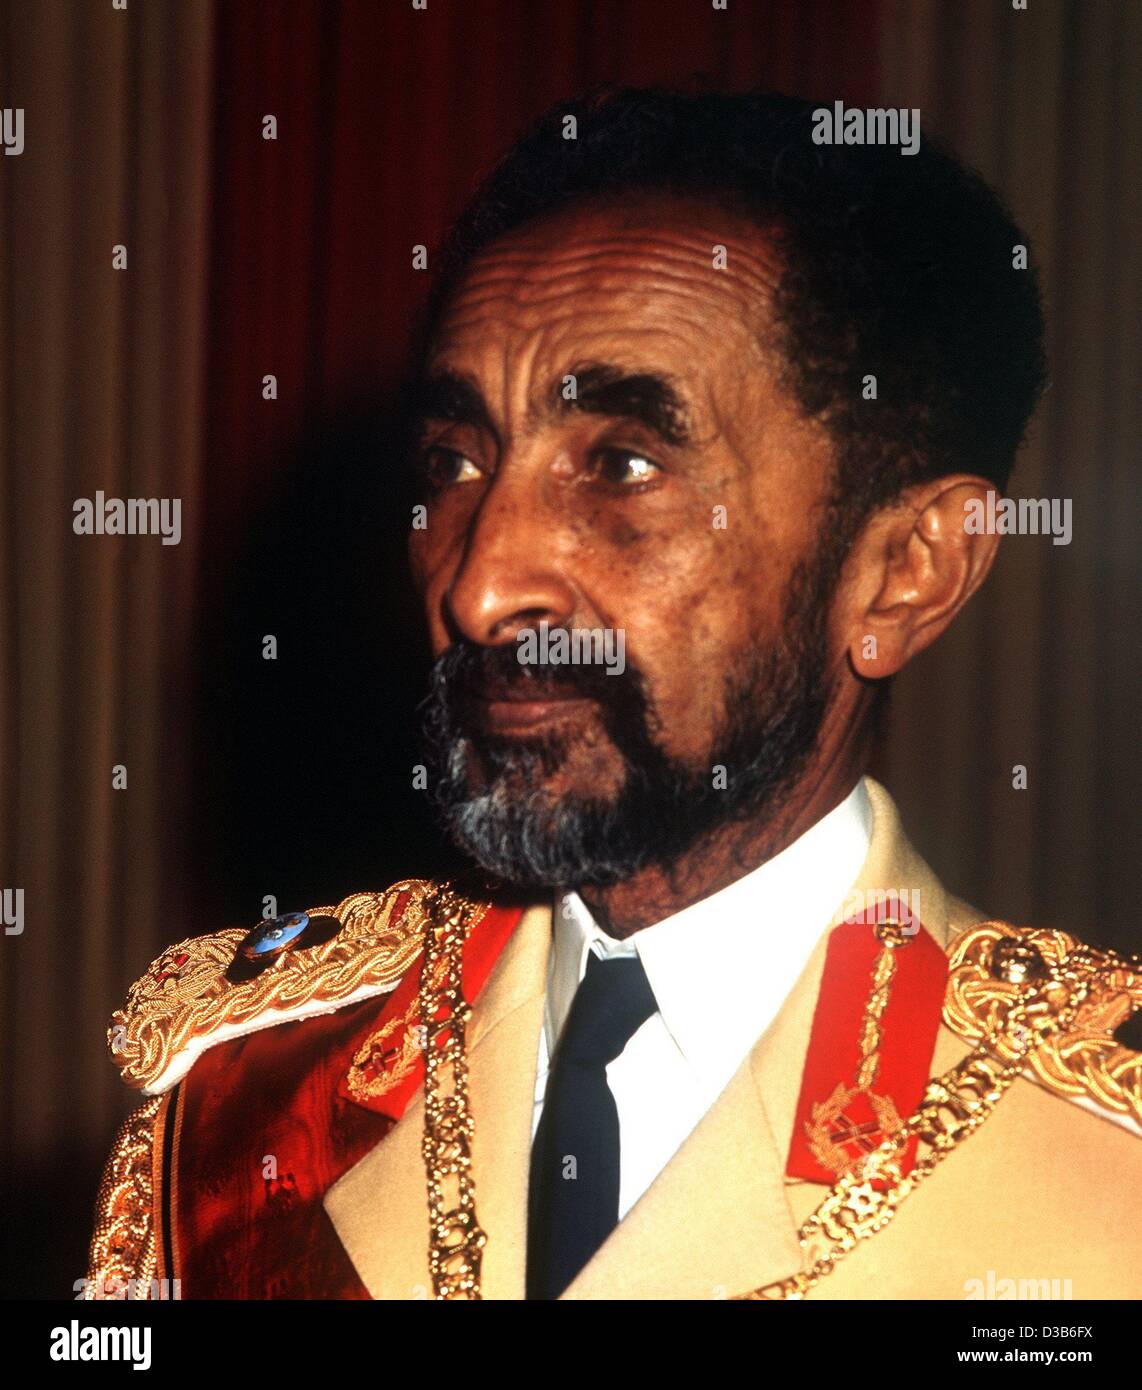 (Dpa-Dateien) - zeigt eine undatierte Datei Bild Kaiser Haile Selassie von Äthiopien während eines Banketts in Addis Abeba. Geboren am 23. Juli 1892 unter dem Namen Tafari, wurde er später Rastafari (Prinz) und Messias der Rastafaris. Wenn er 1930 Regent ernannt wurde, nahm er den Namen von Haile Selassie ("Mi Stockfoto